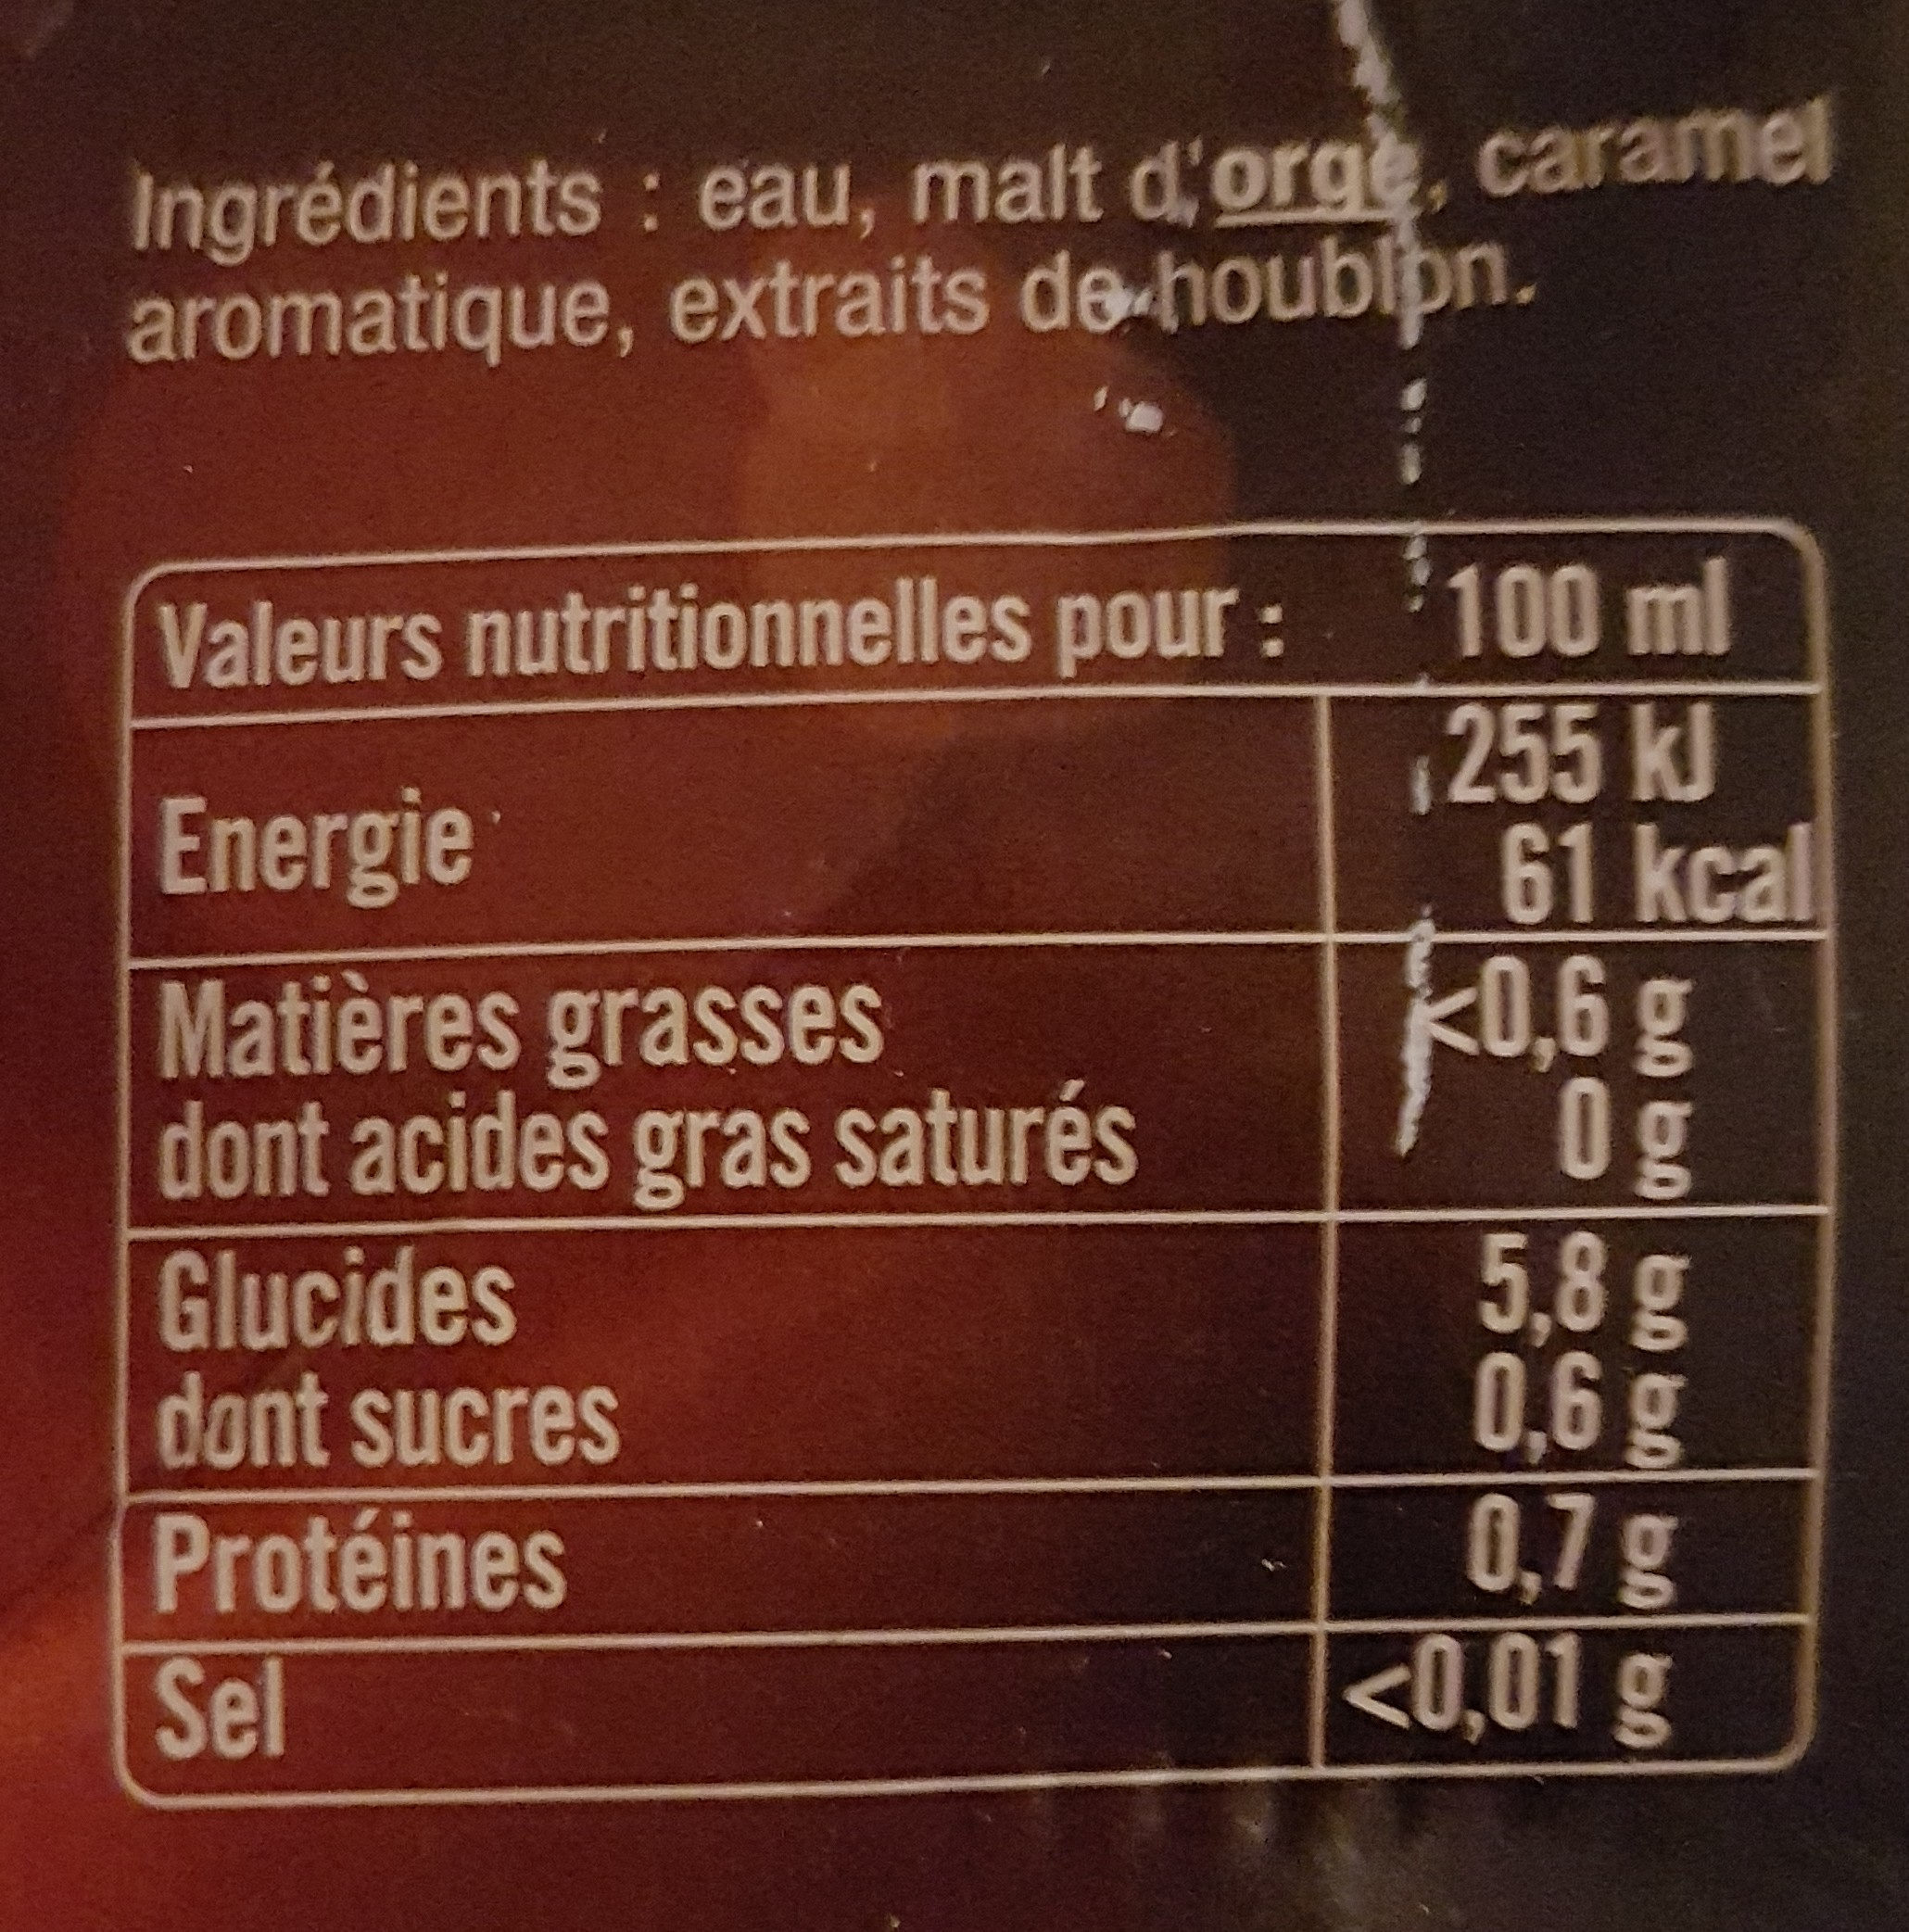 Pelfort brune - Ingredients - fr